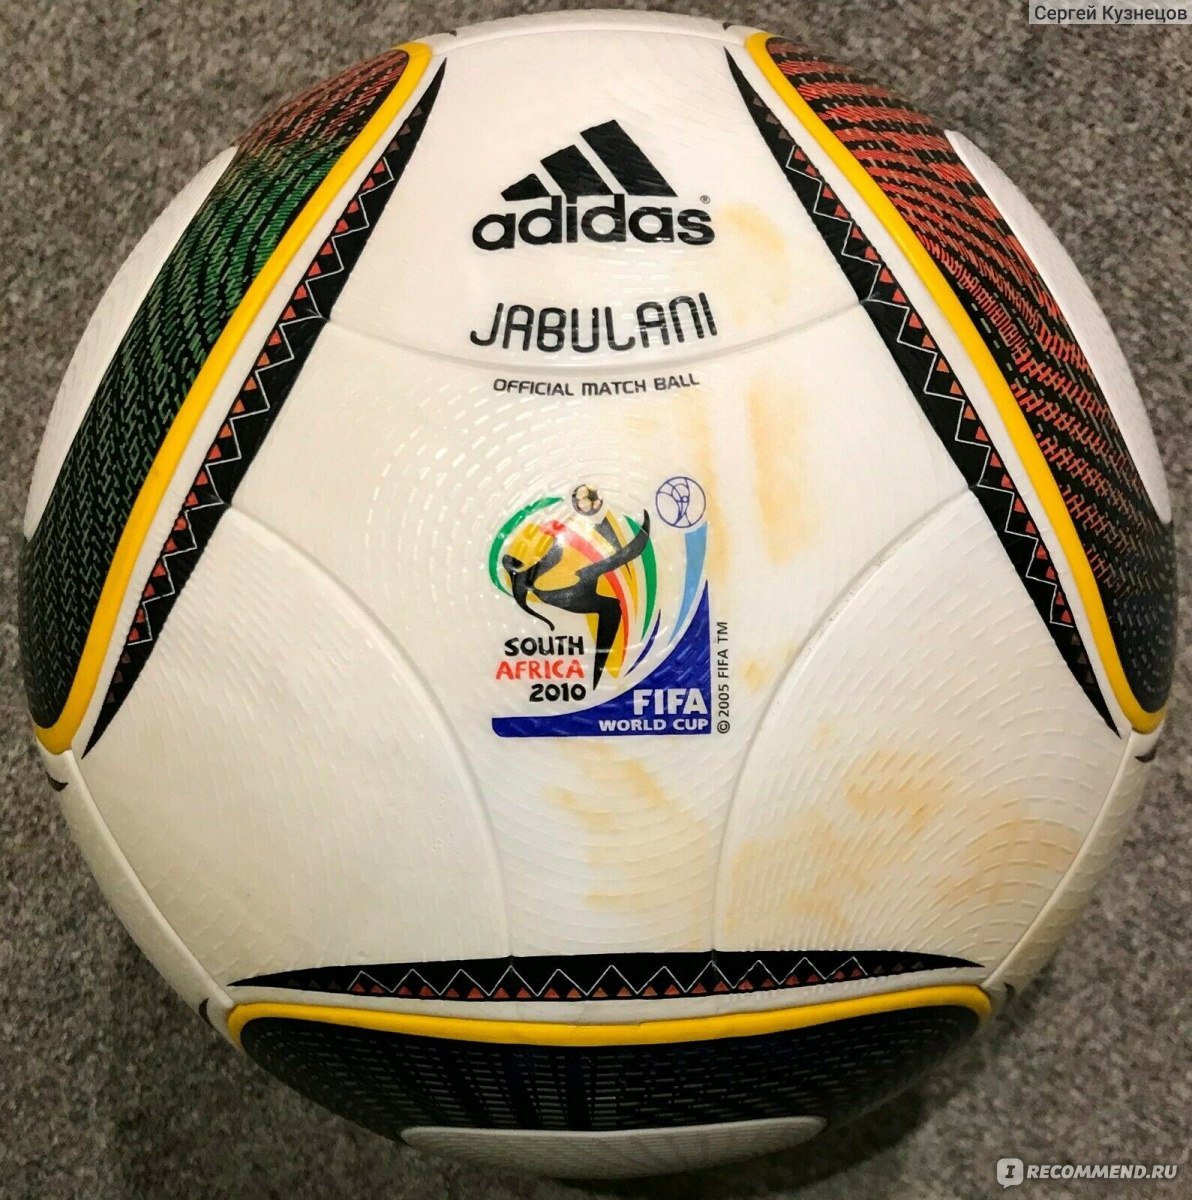 Мяч футбольный adidas Jabulani wc2010